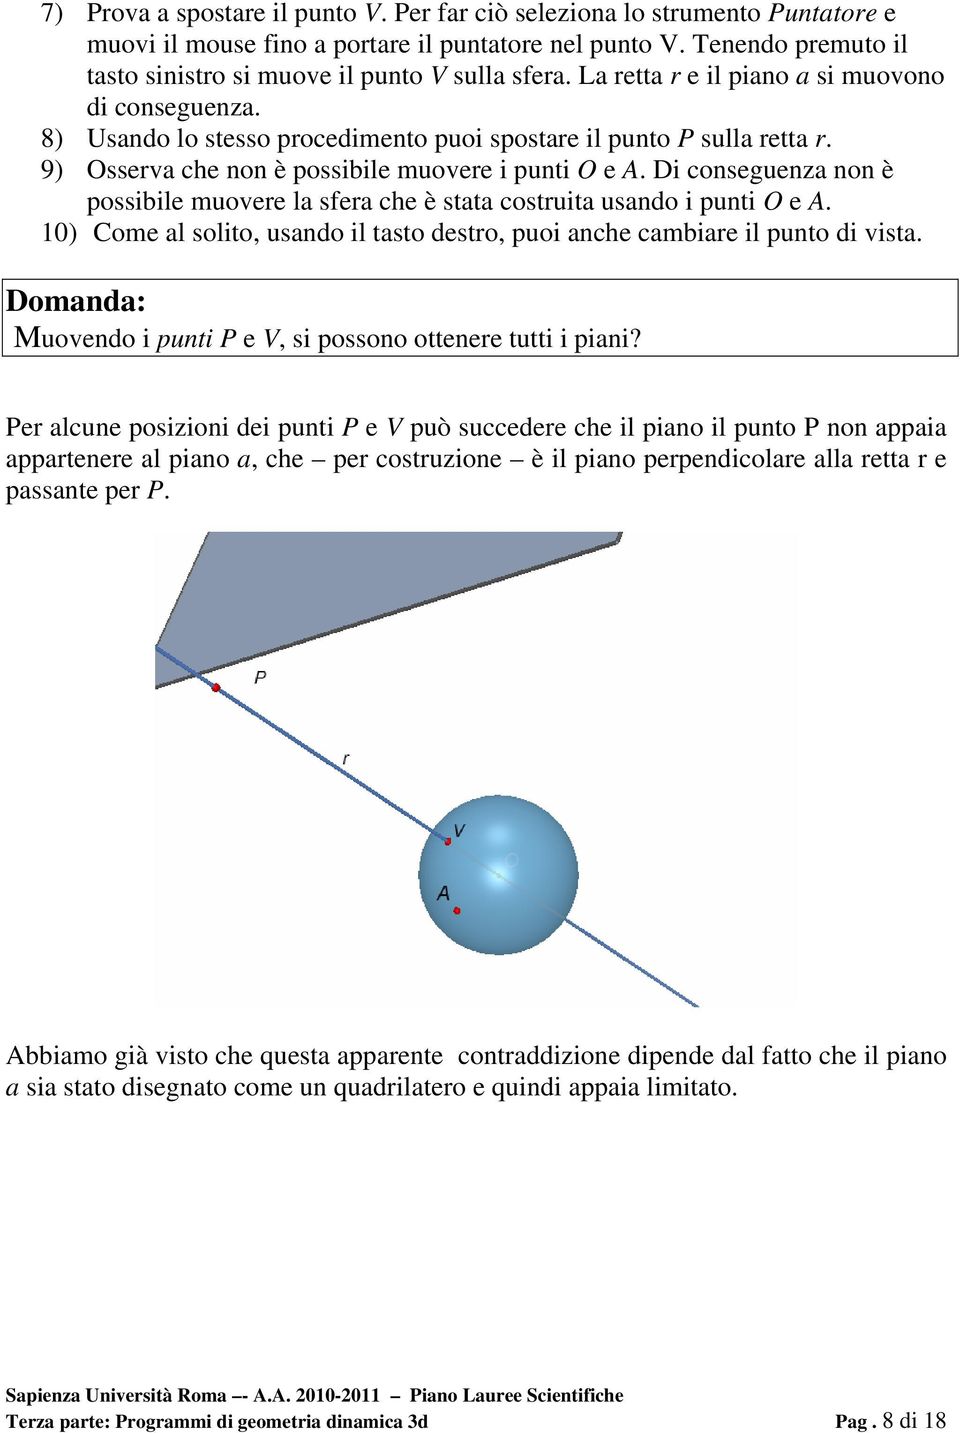 9) Osserva che non è possibile muovere i punti O e A. Di conseguenza non è possibile muovere la sfera che è stata costruita usando i punti O e A.